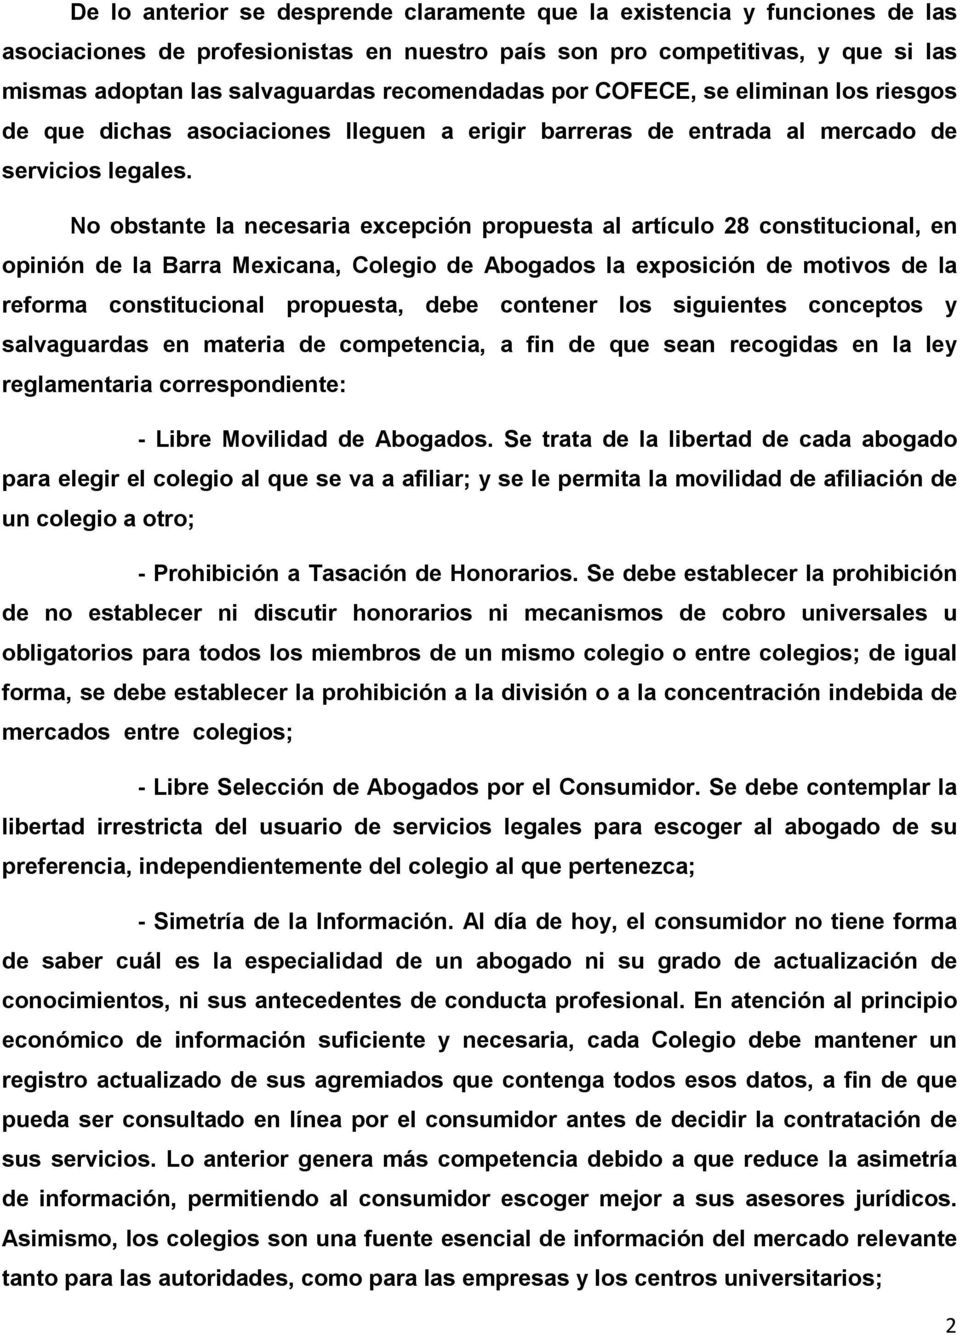 No obstante la necesaria excepción propuesta al artículo 28 constitucional, en opinión de la Barra Mexicana, Colegio de Abogados la exposición de motivos de la reforma constitucional propuesta, debe